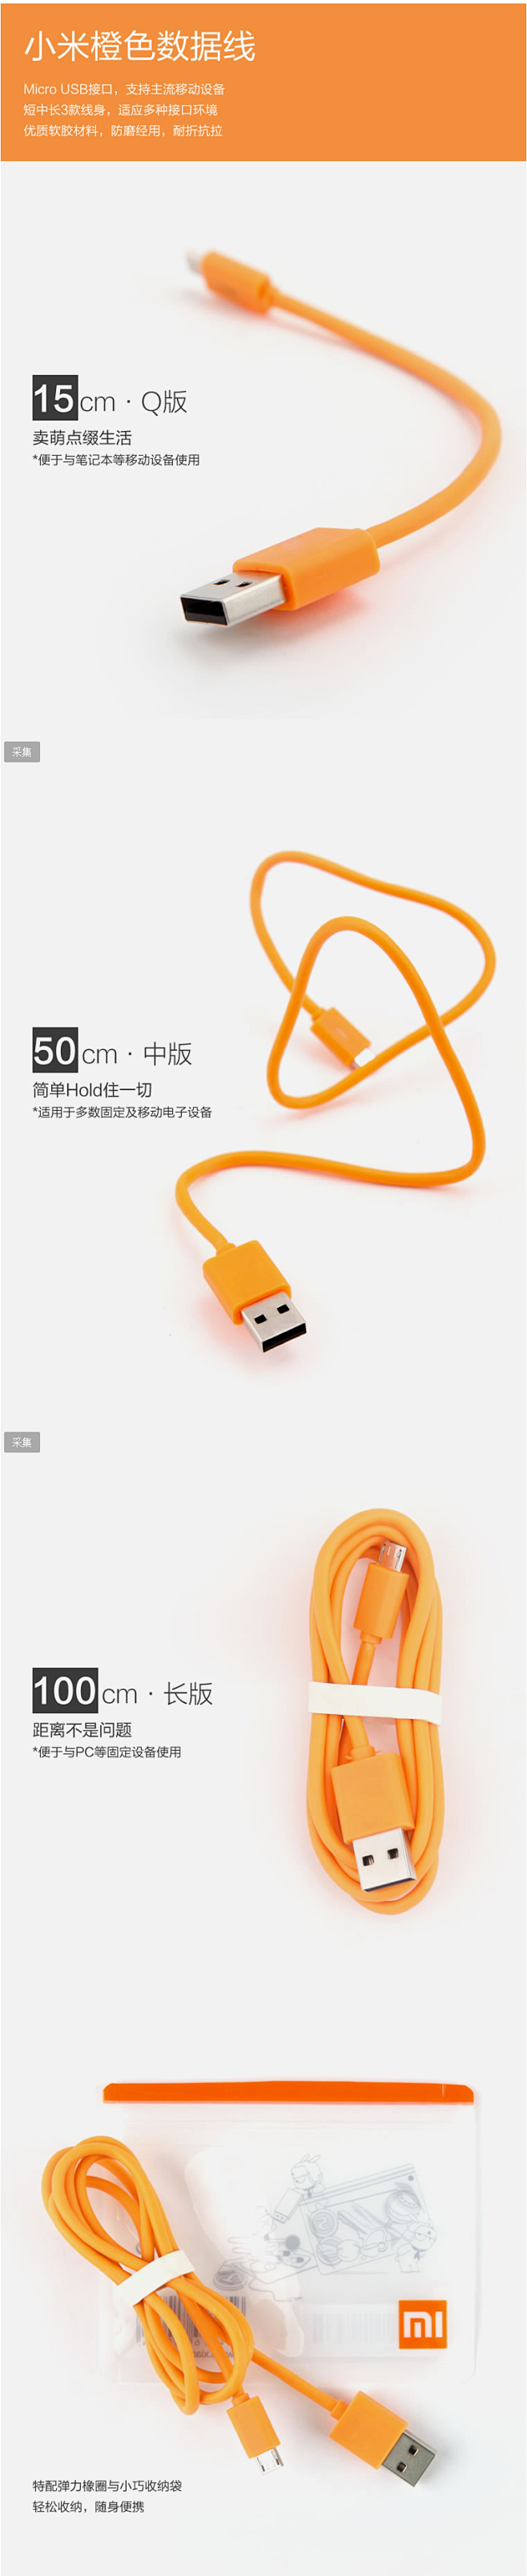 【线材】小米100cm USB数据线——...